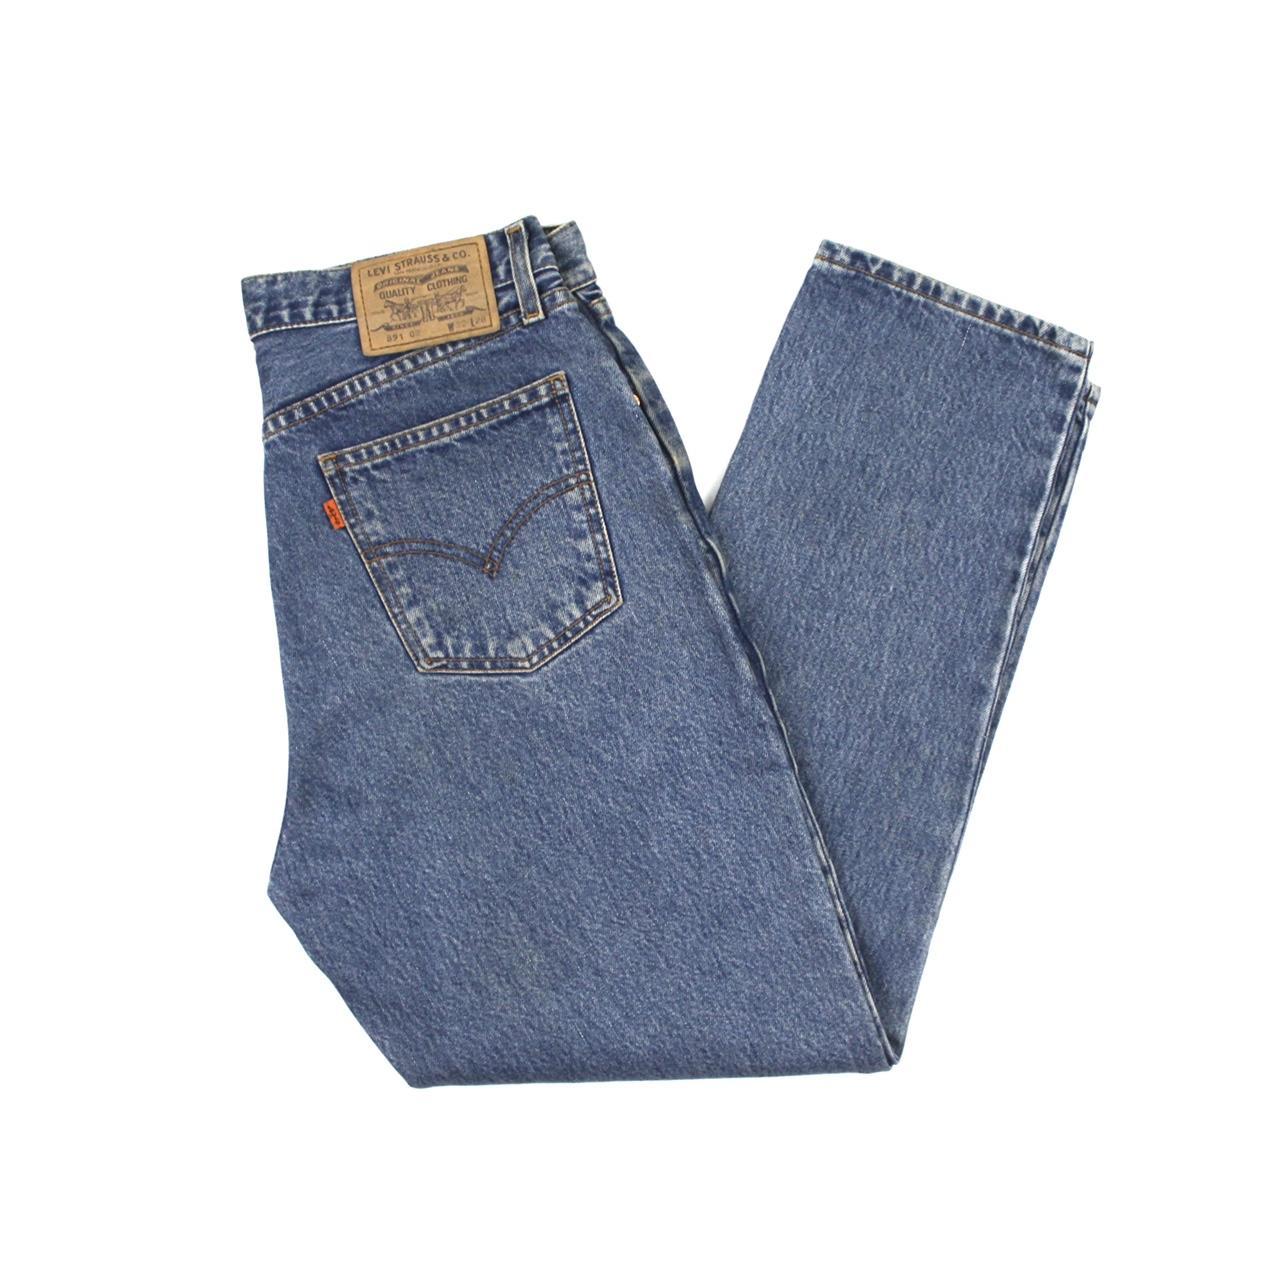 Split Semblance Normalization Vintage Levis 891 Light Wash Denim Jeans, Orange... - Depop